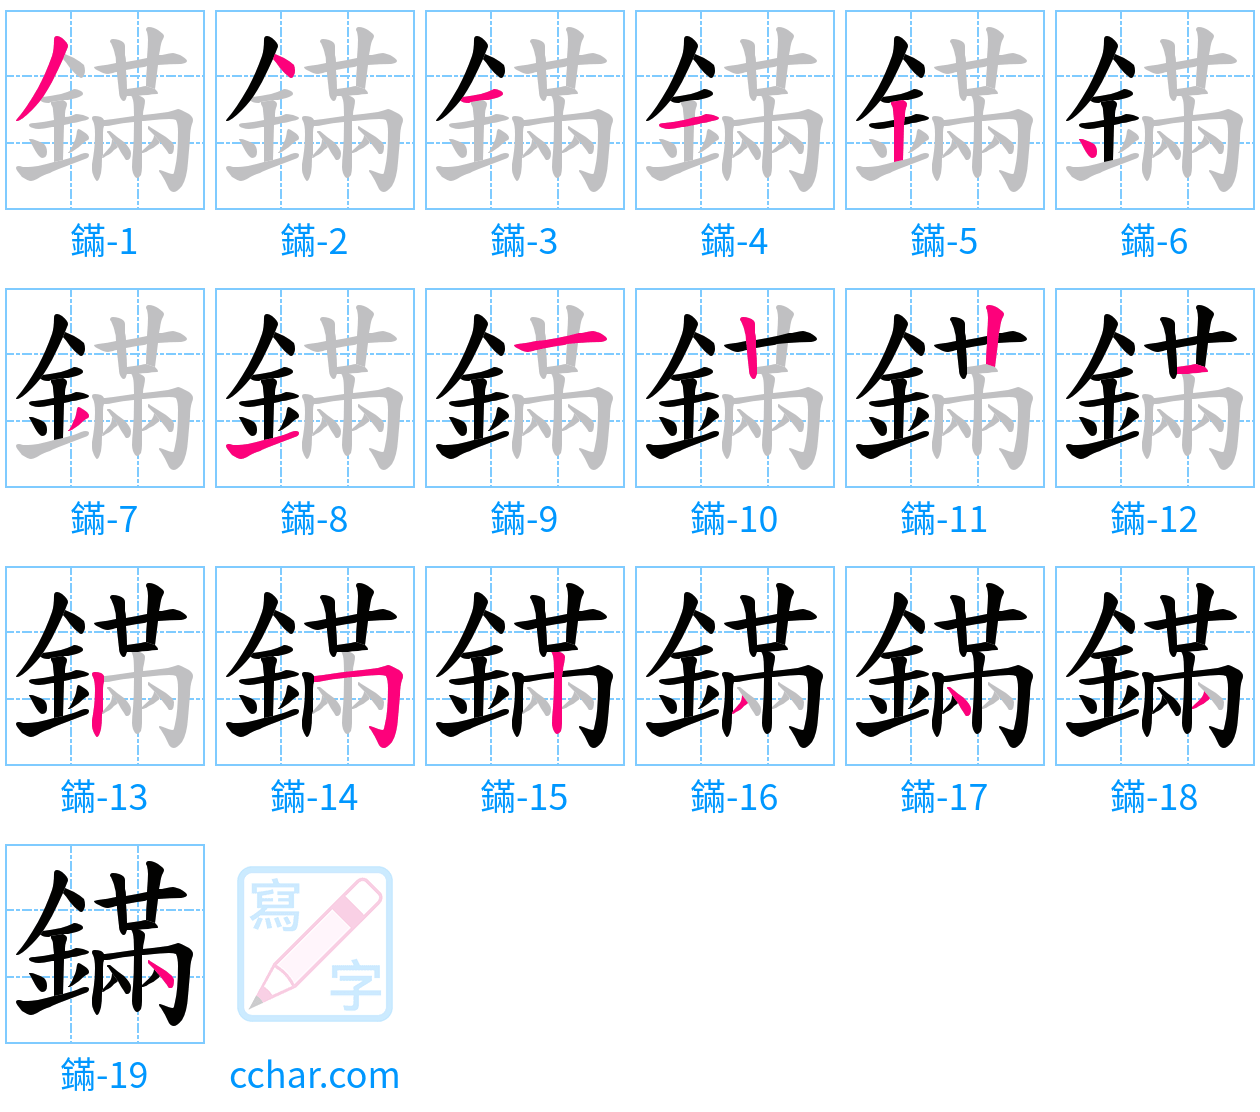 鏋 stroke order step-by-step diagram